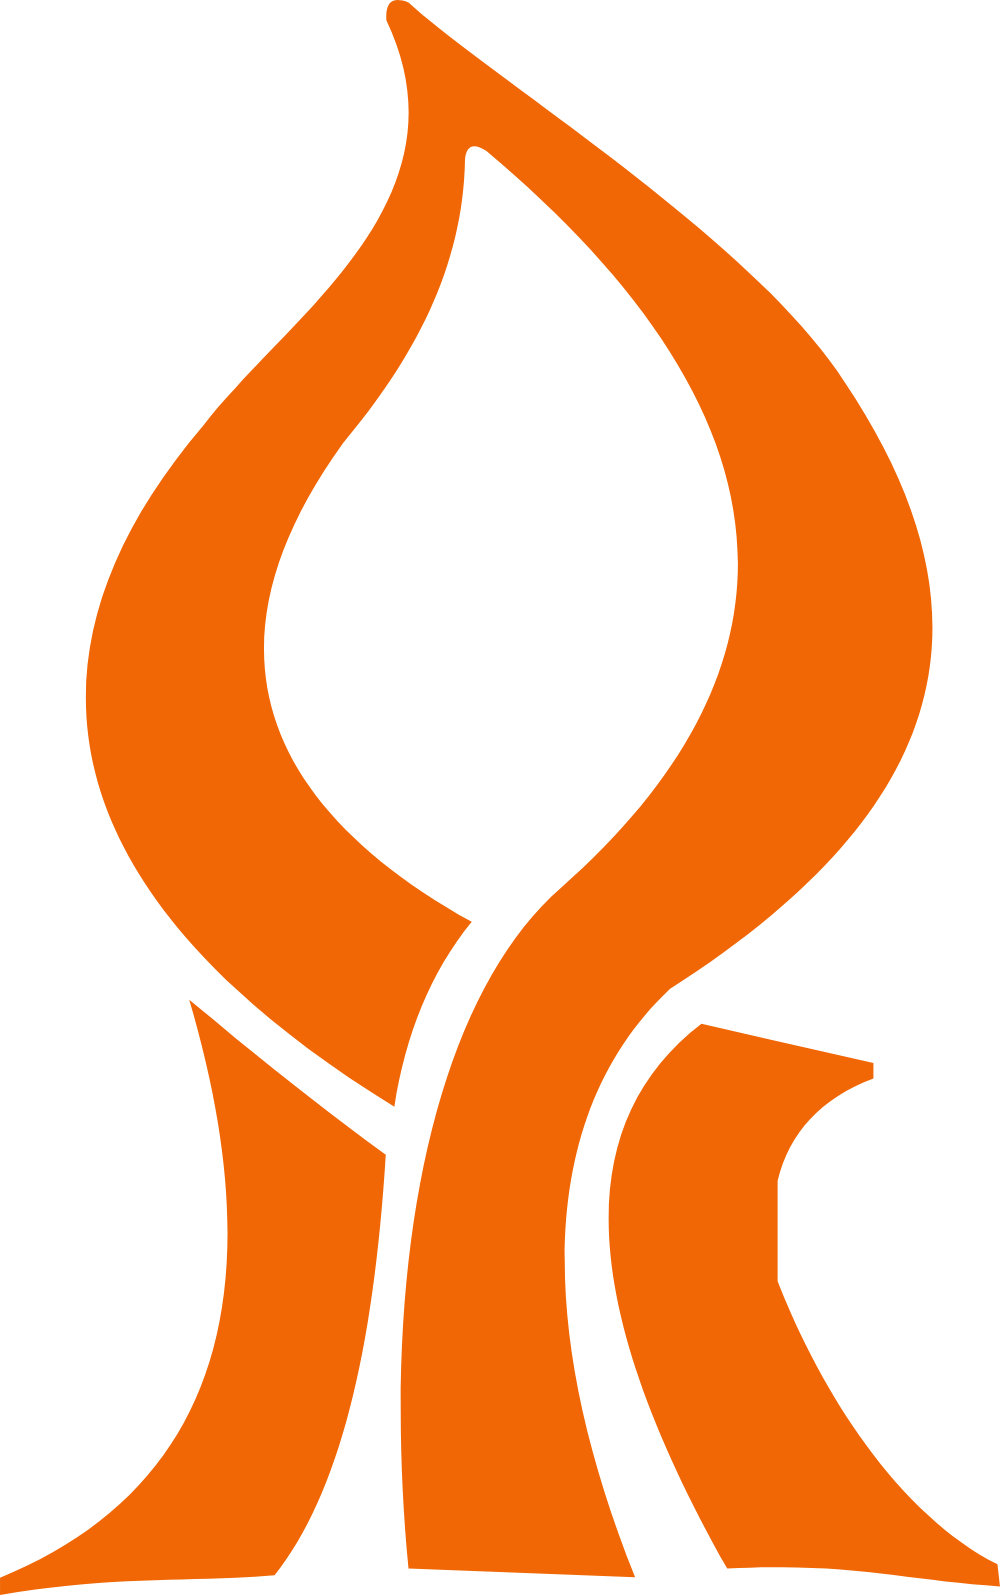 UNIVERSITY BEN GURION Logo Logos